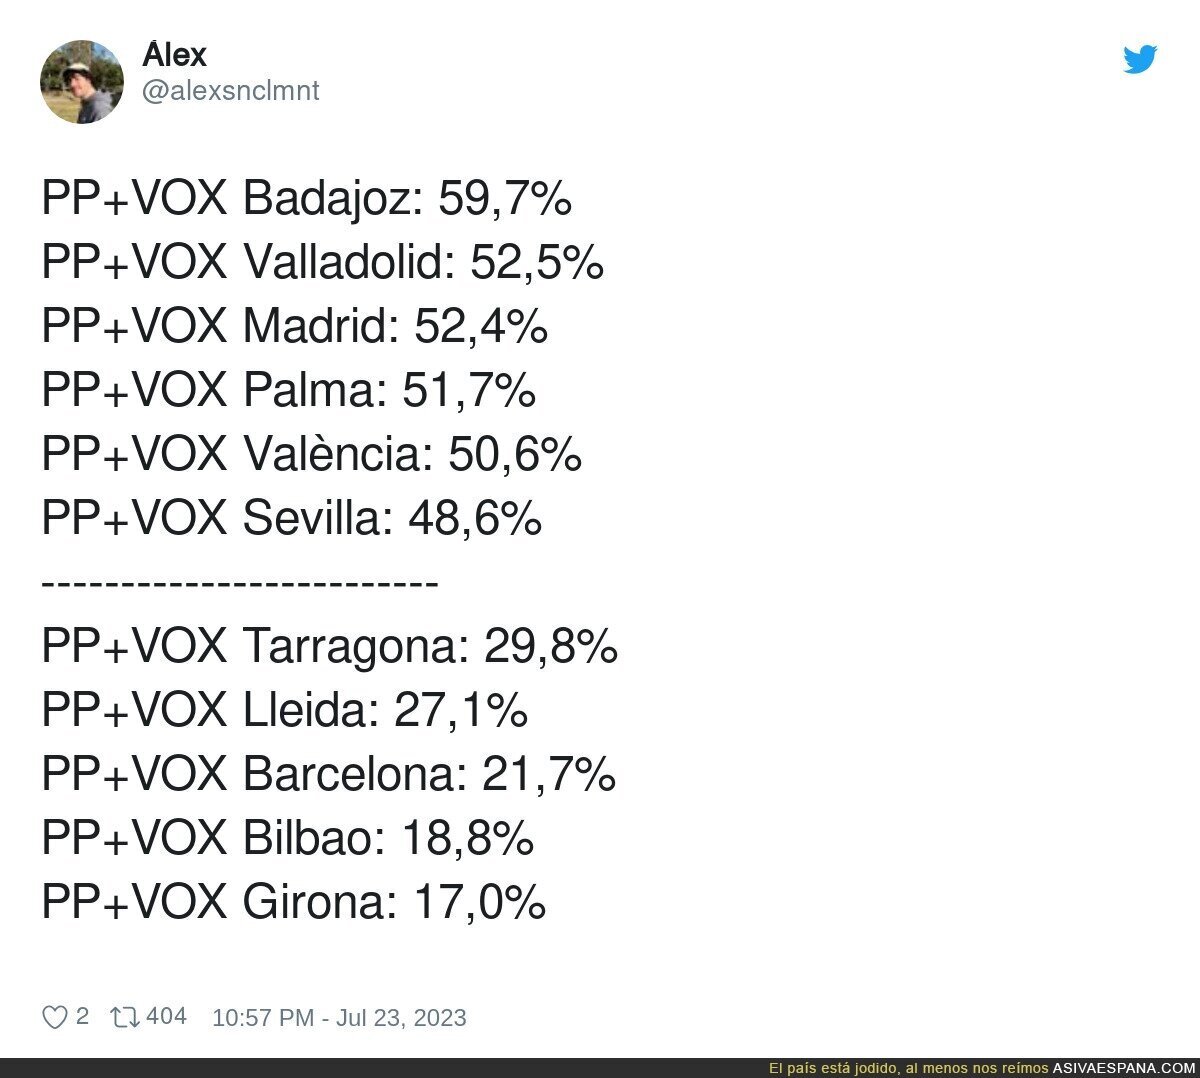 Diferencia de como se vota en Barcelona con otros territorios